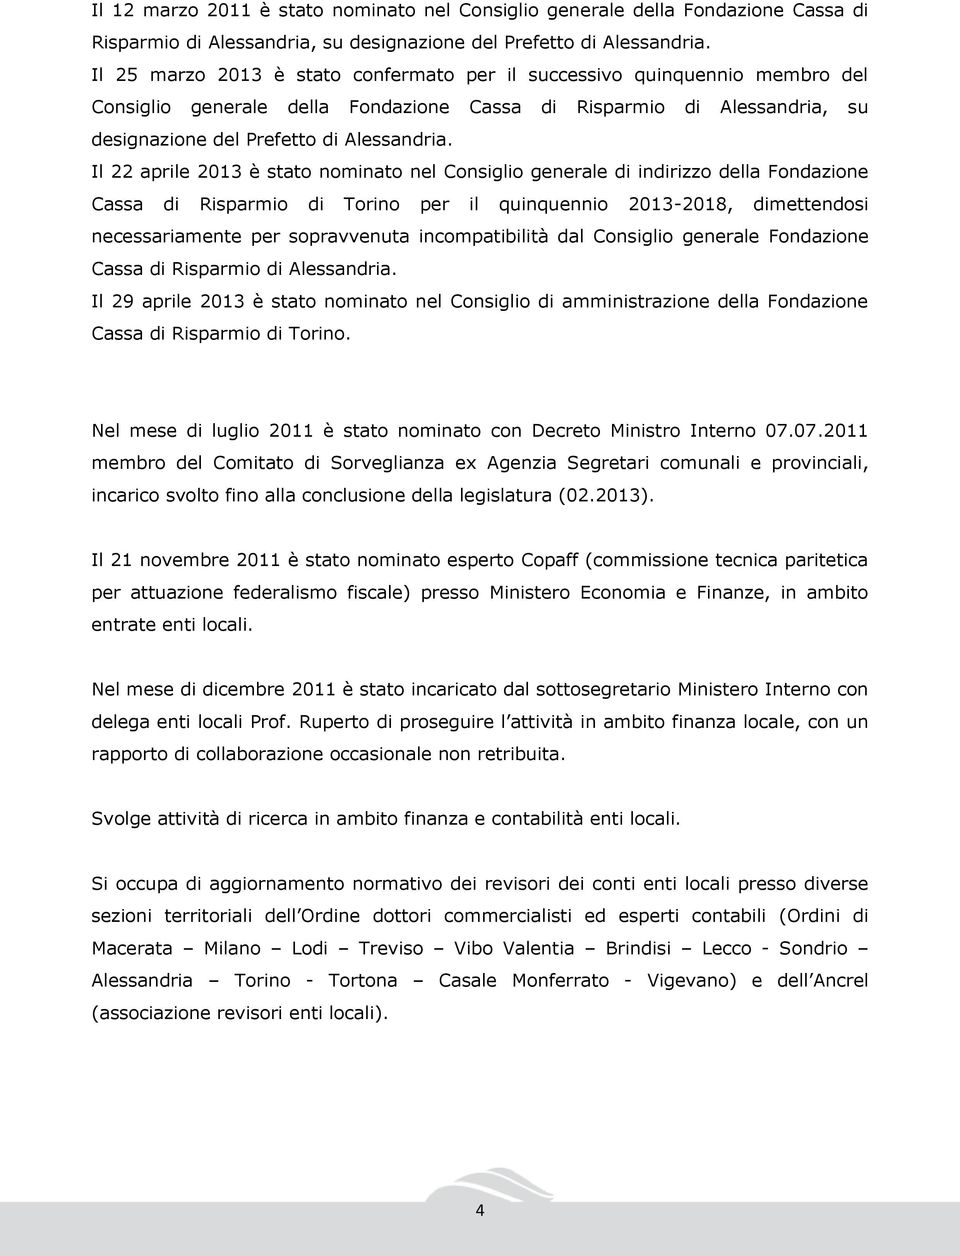 Il 22 aprile 2013 è stato nominato nel Consiglio generale di indirizzo della Fondazione Cassa di Risparmio di Torino per il quinquennio 2013-2018, dimettendosi necessariamente per sopravvenuta